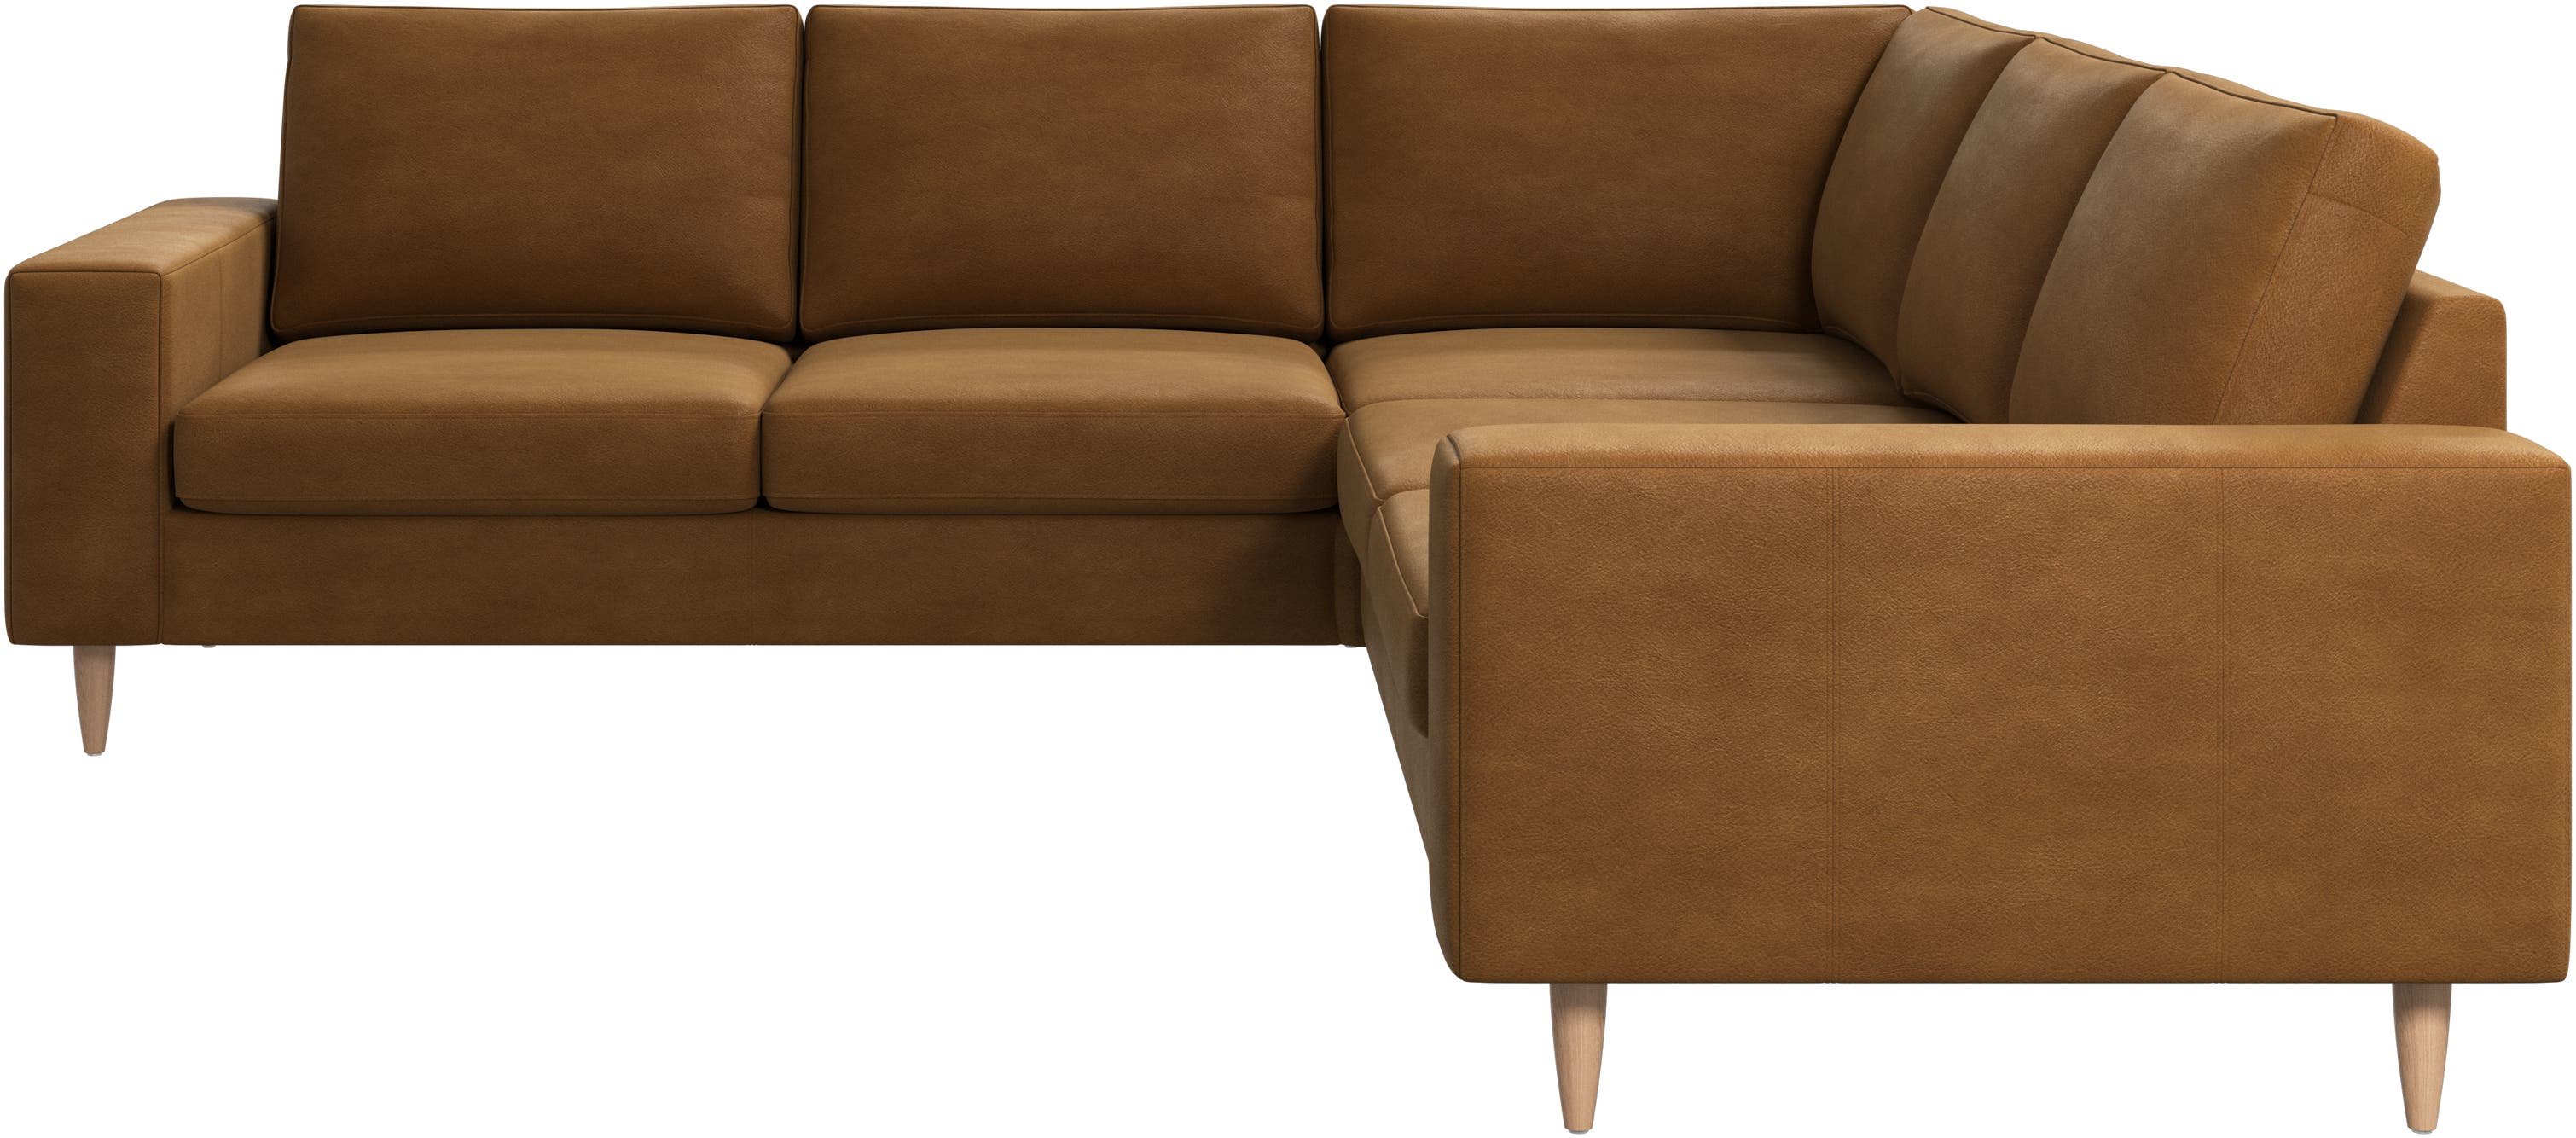 Indivi corner sofa